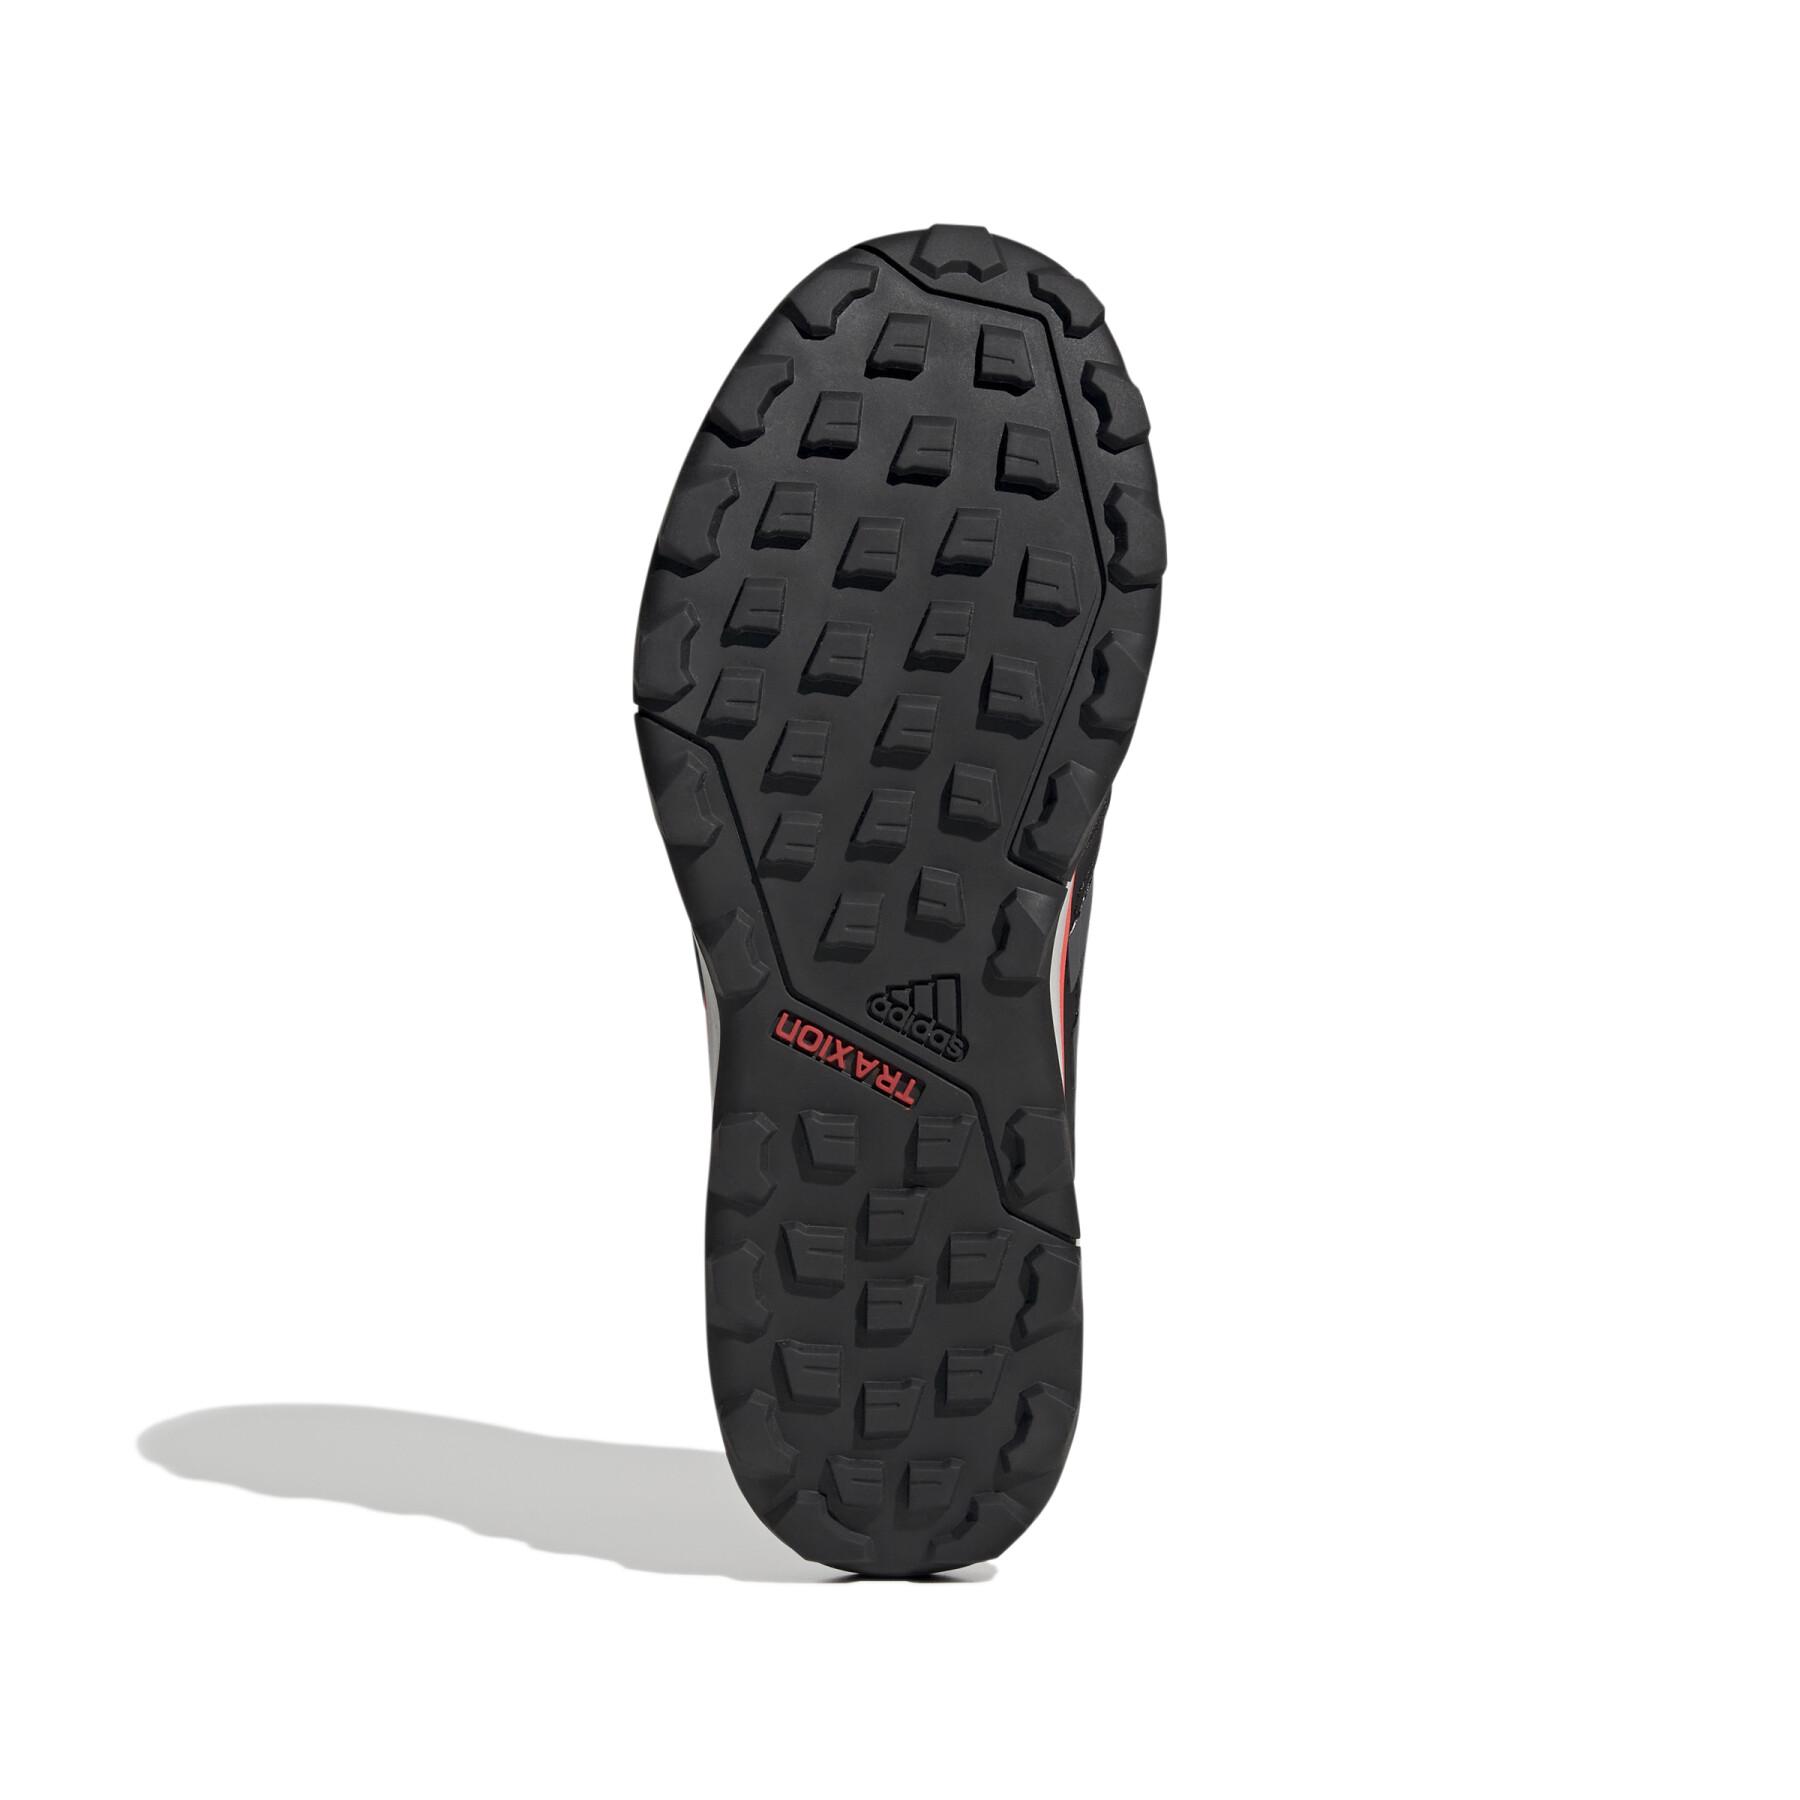 Zapatillas para correr adidas Tracerocker 2.0 Trail Running